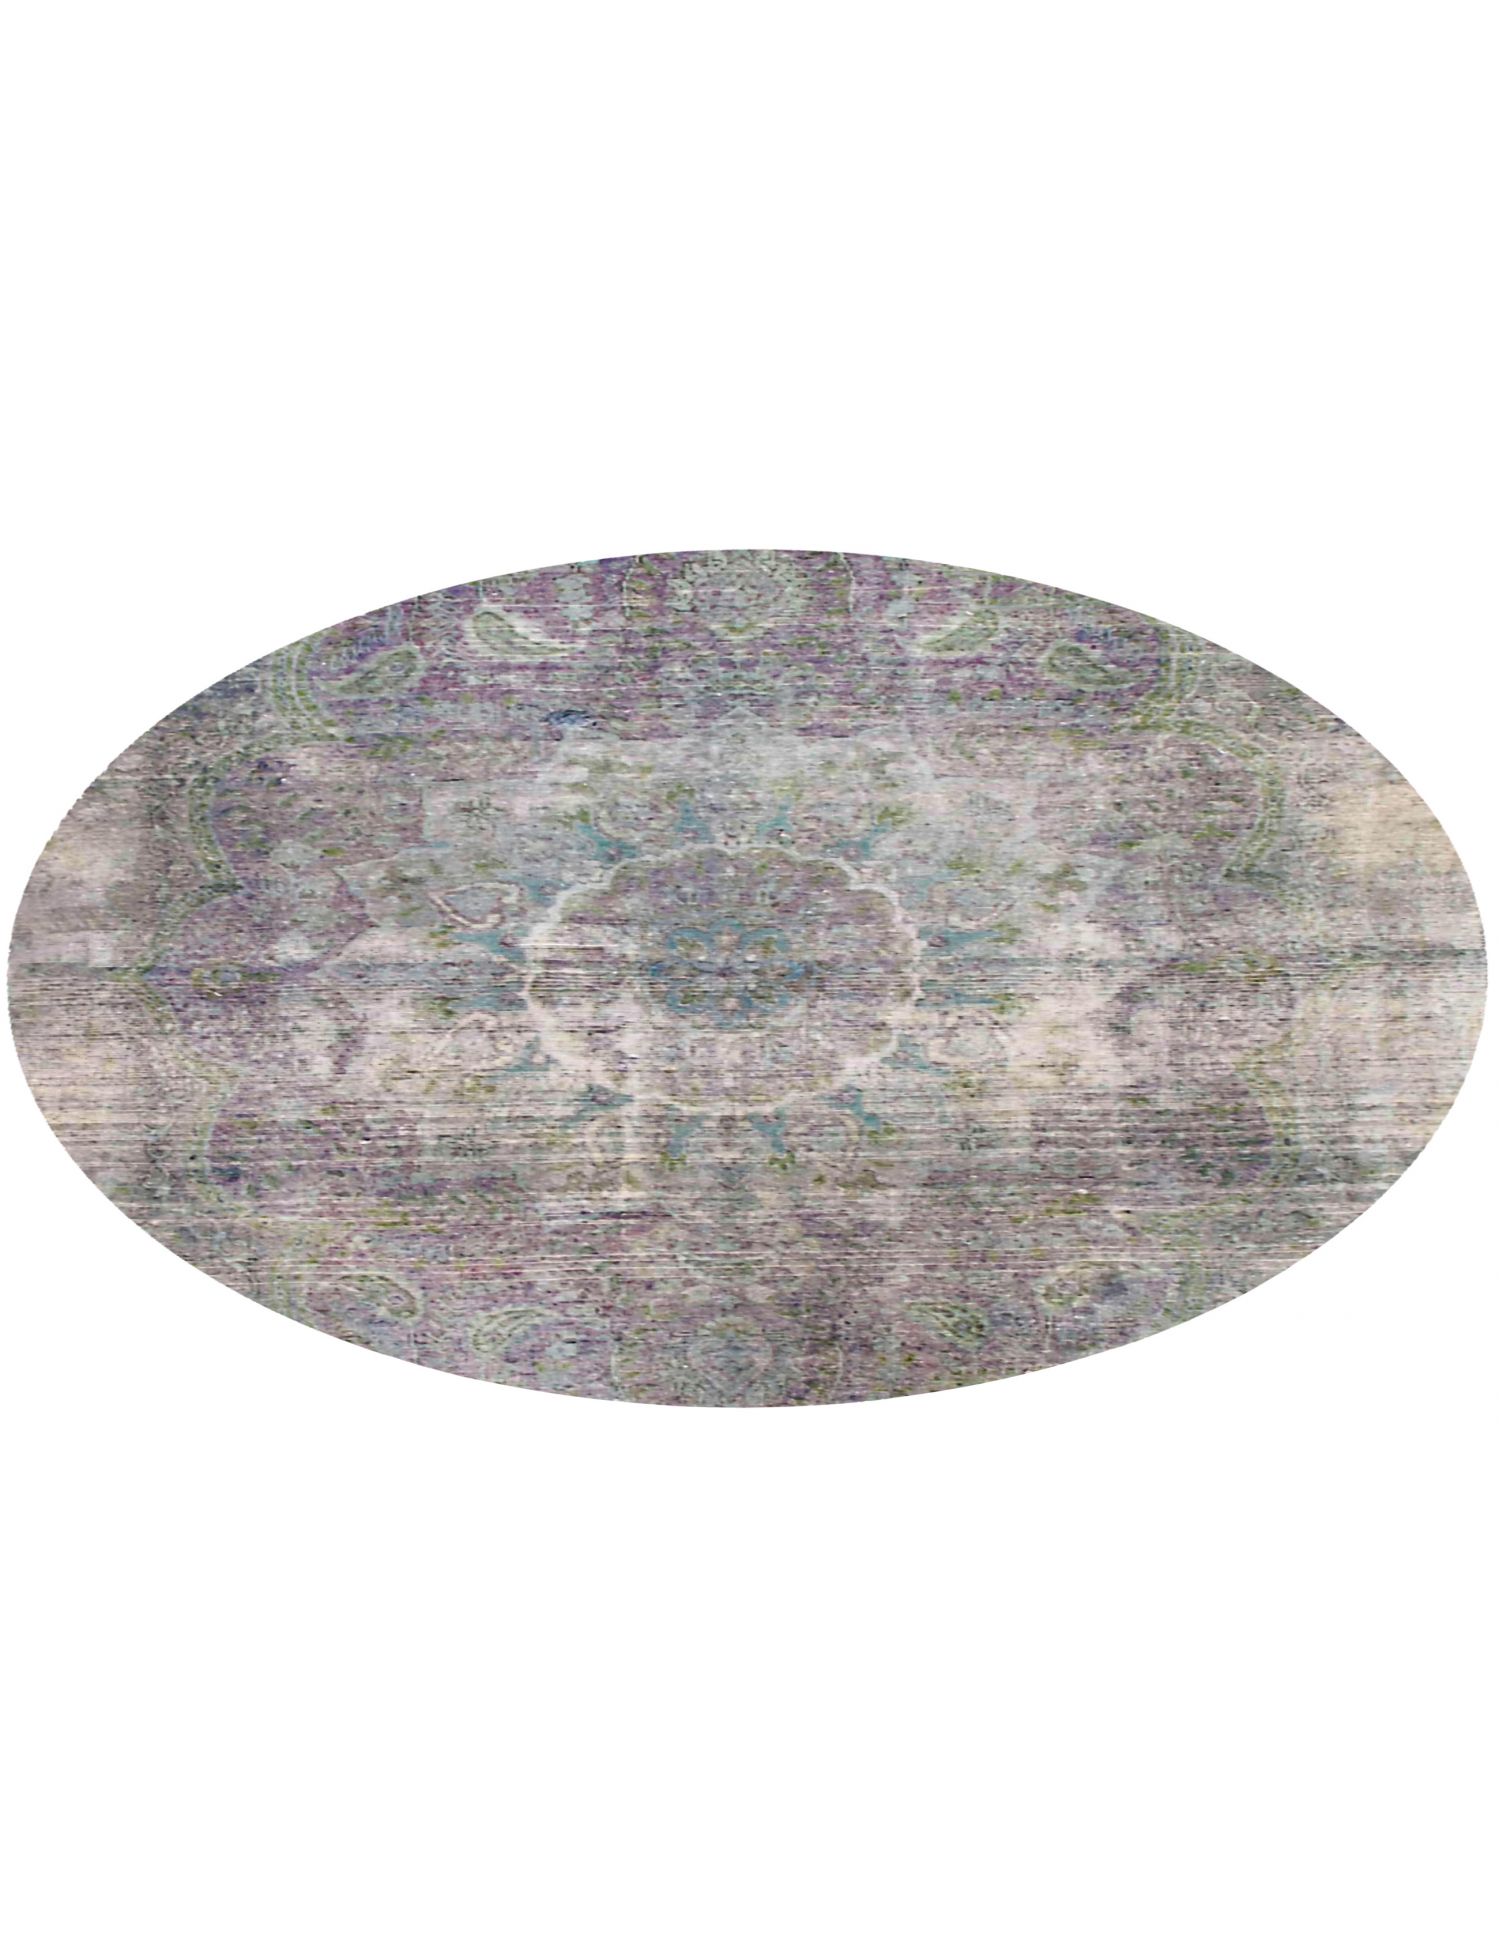 Rund  Vintage Teppich  lila <br/>200 x 200 cm